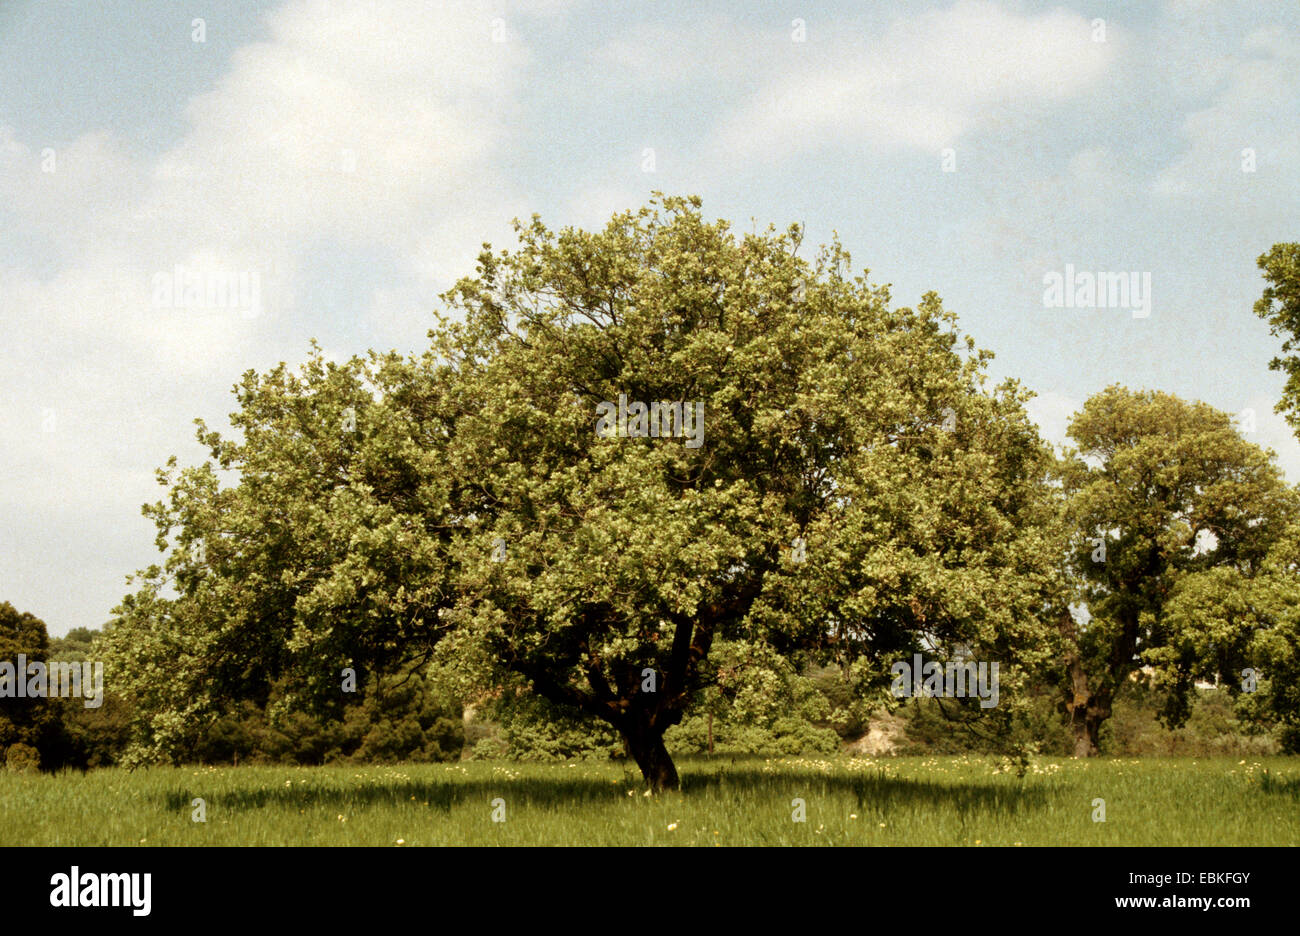 Dyer's oak, Vallonian oak (Quercus macrolepis), single tree in a meadow Stock Photo